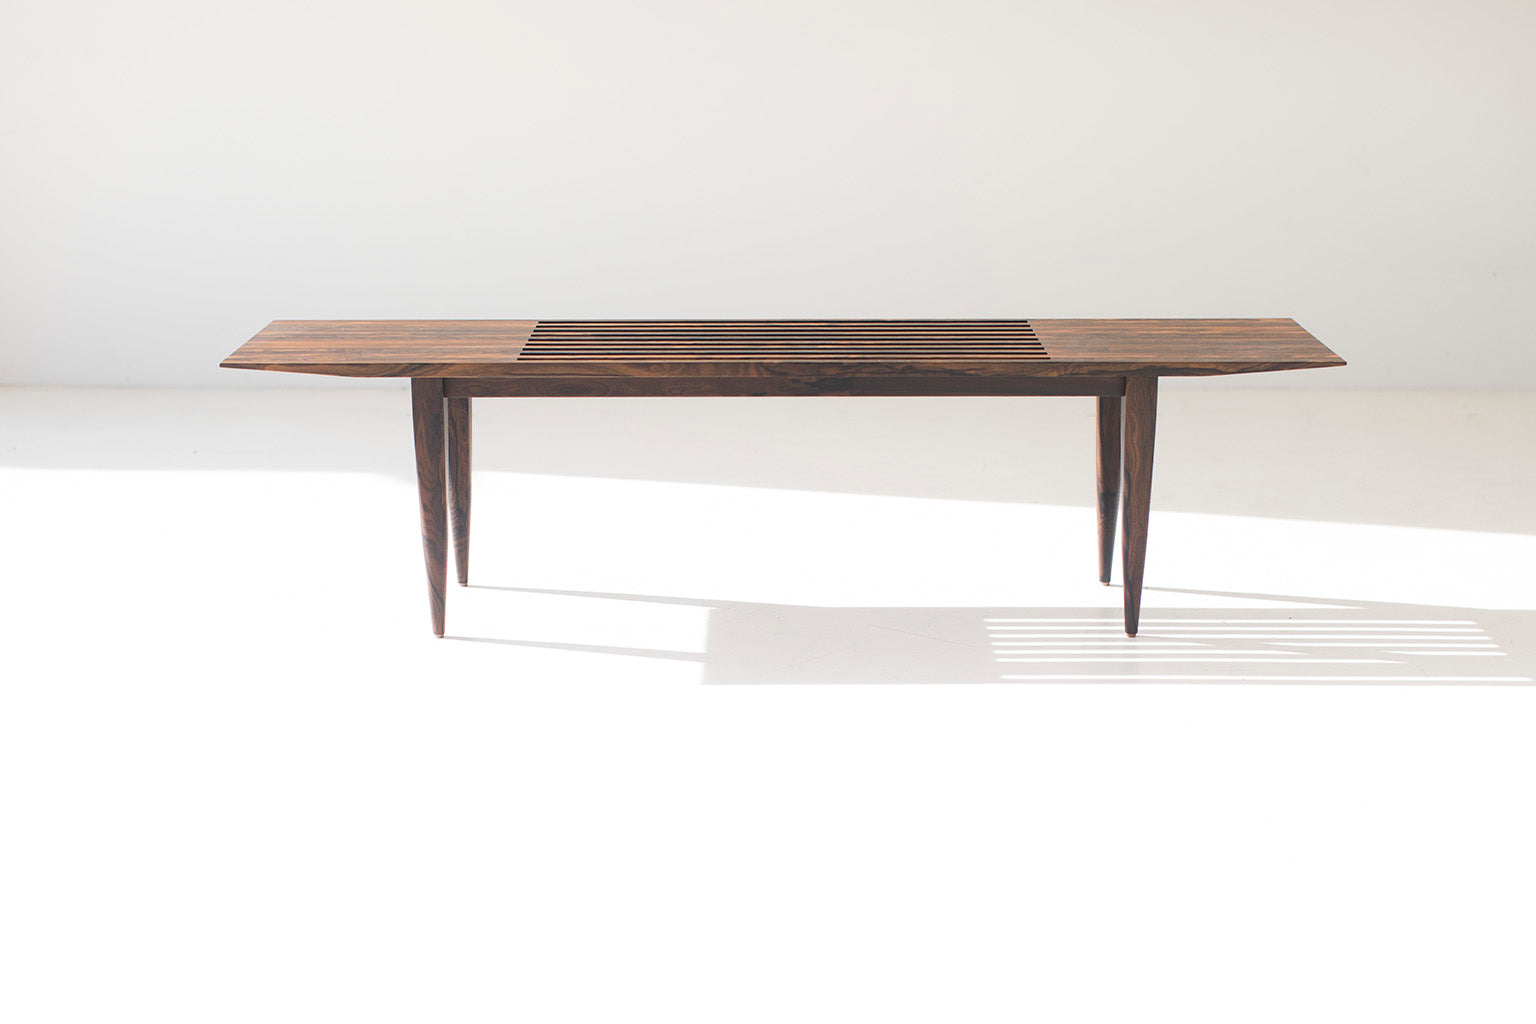  Modern Slatted Bench 1602 J Bench Craft Associates® Furniture, Image 03